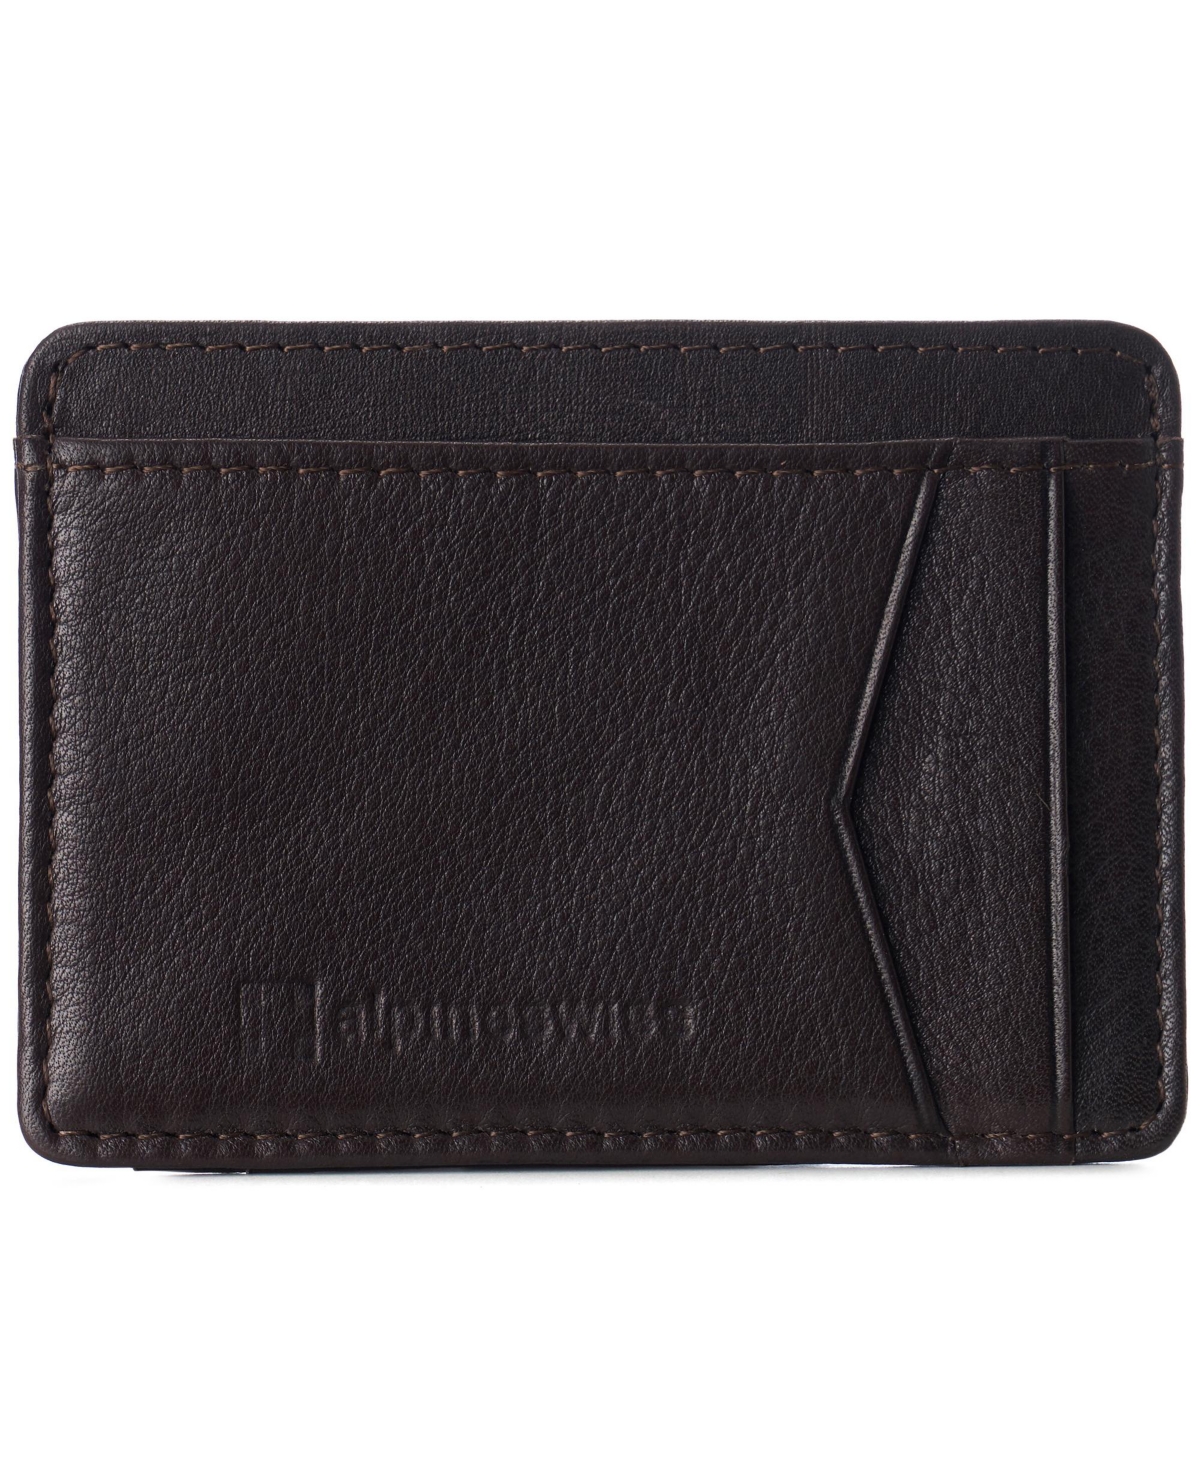 Men Rfid Safe Minimalist Front Pocket Wallet Leather Thin Card Case - Black